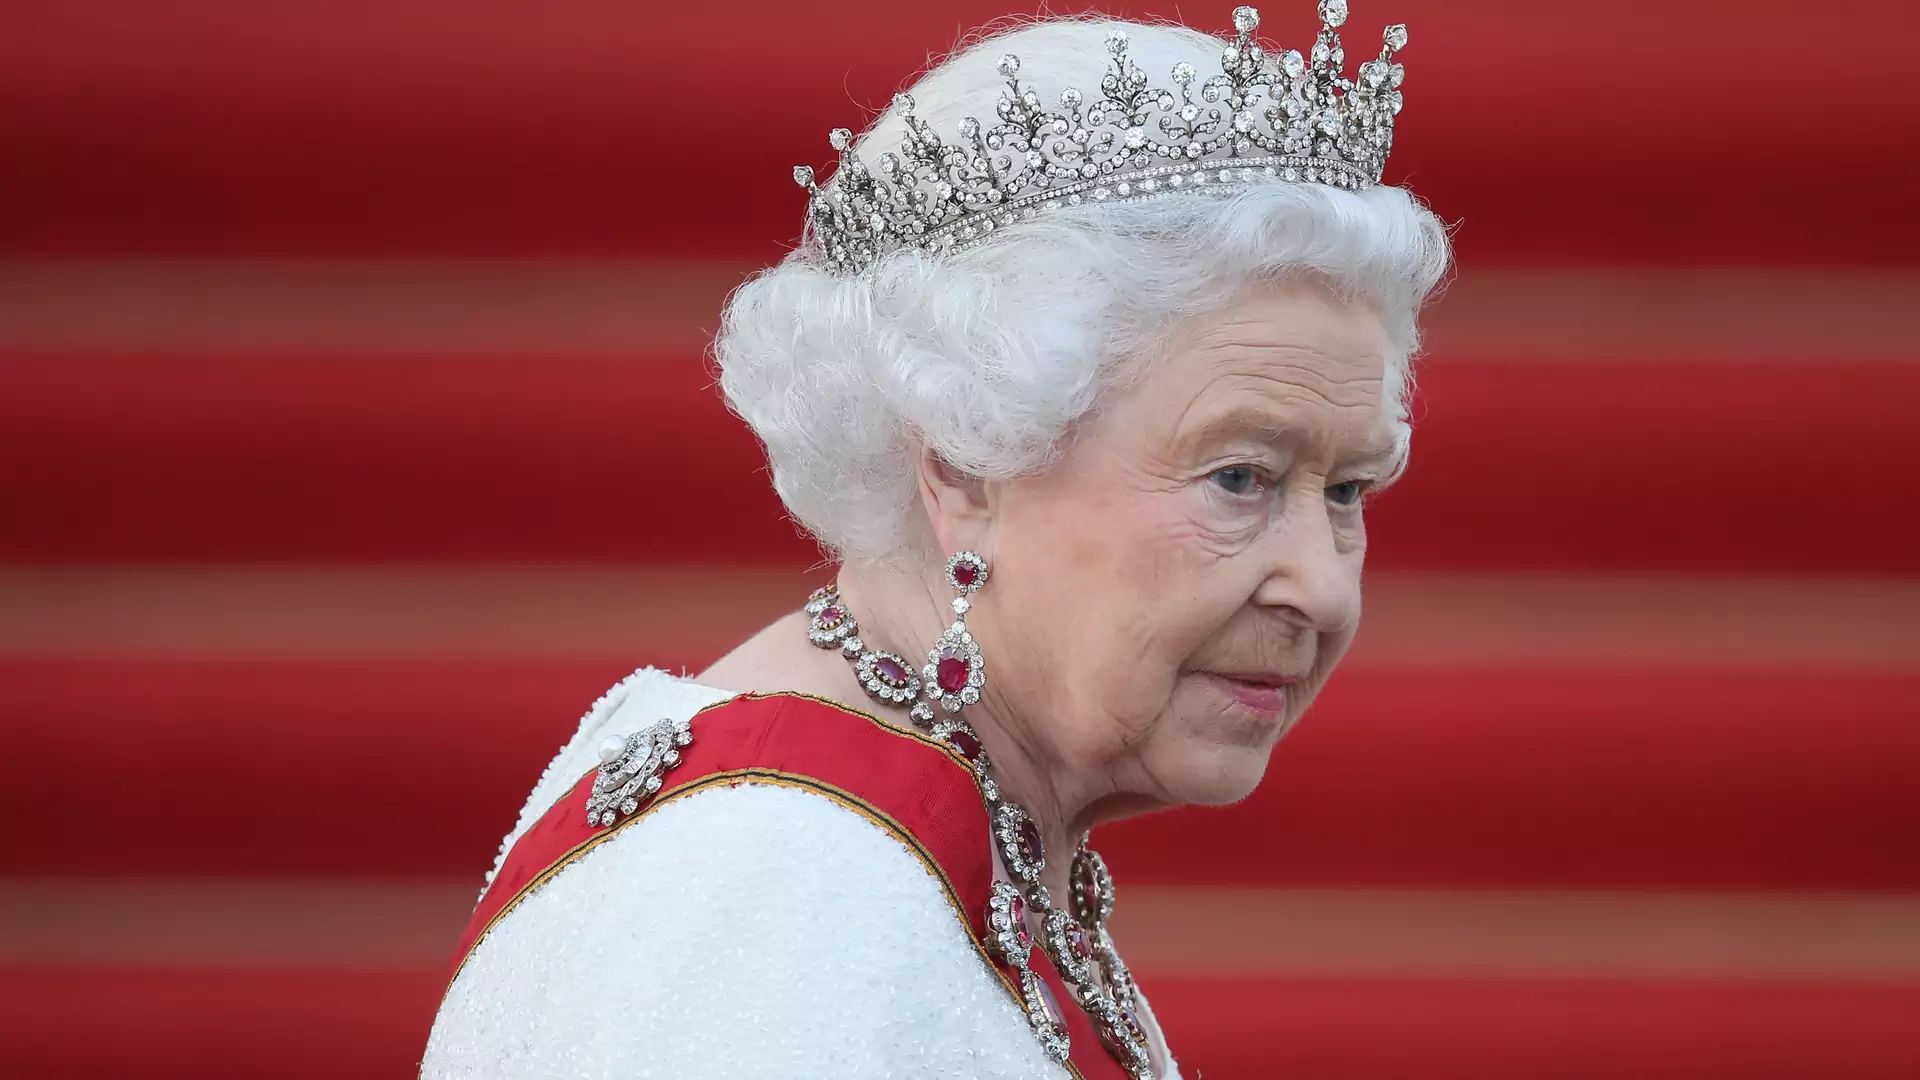 Elżbieta II spoliczkowała swojego siostrzeńca - królowa lubi się zgrywać